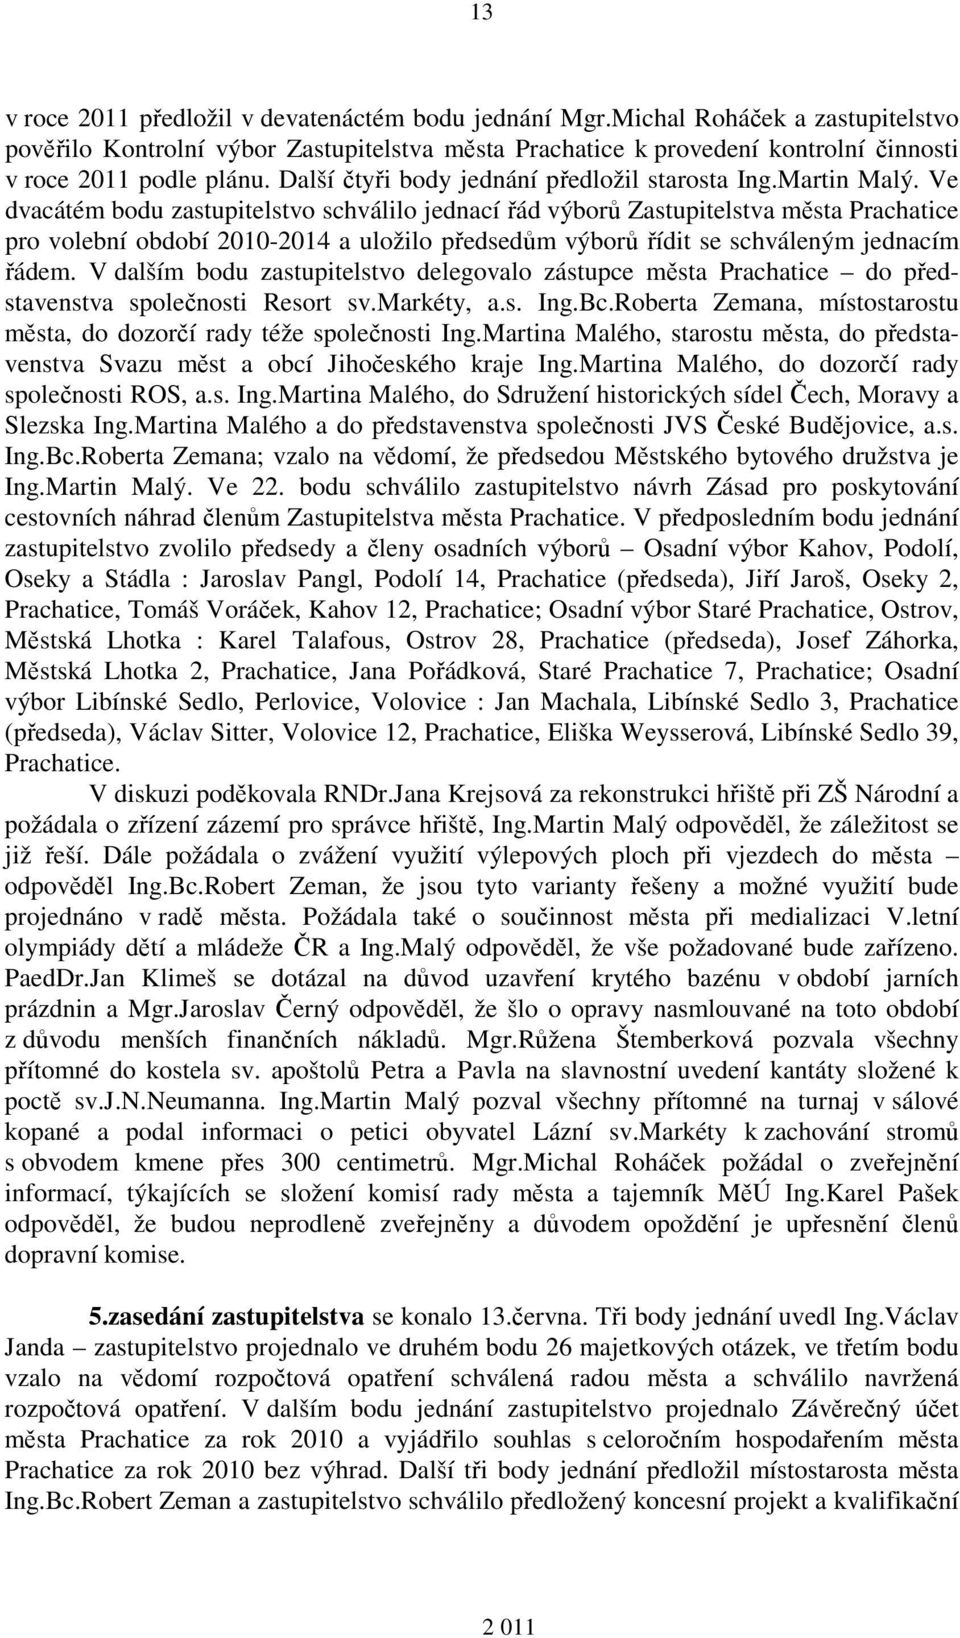 Martin Malý. Ve dvacátém bodu zastupitelstvo schválilo jednací řád výborů Zastupitelstva města Prachatice pro volební období 2010-2014 a uložilo předsedům výborů řídit se schváleným jednacím řádem.